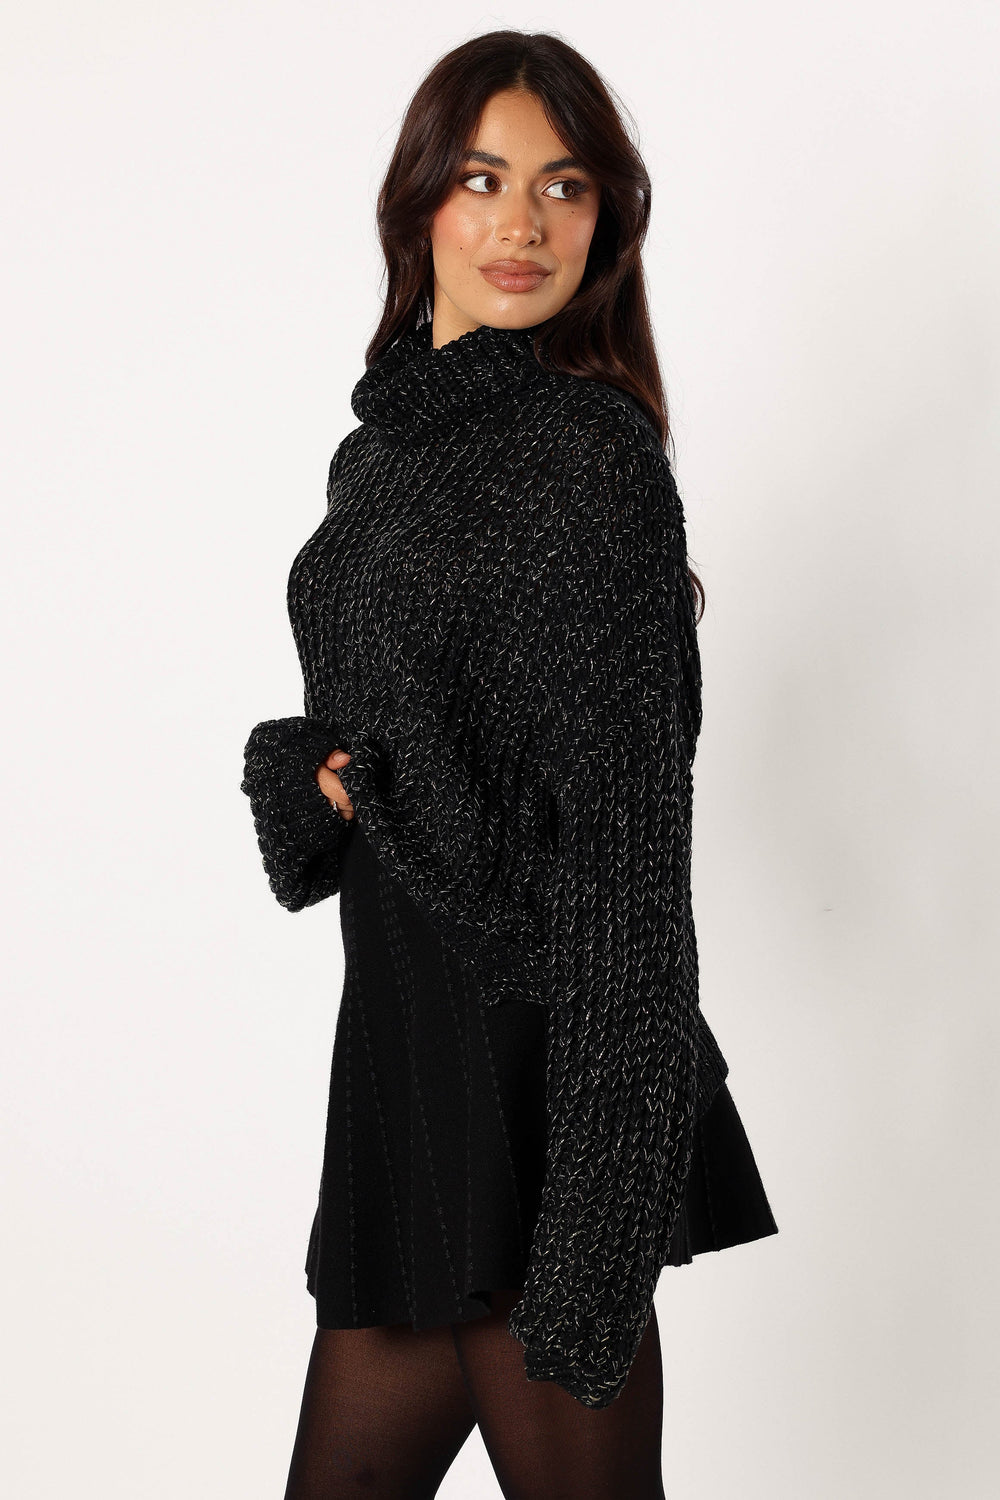 KNITWEAR @Eleanor Lurex Shine Knit Sweater - Black